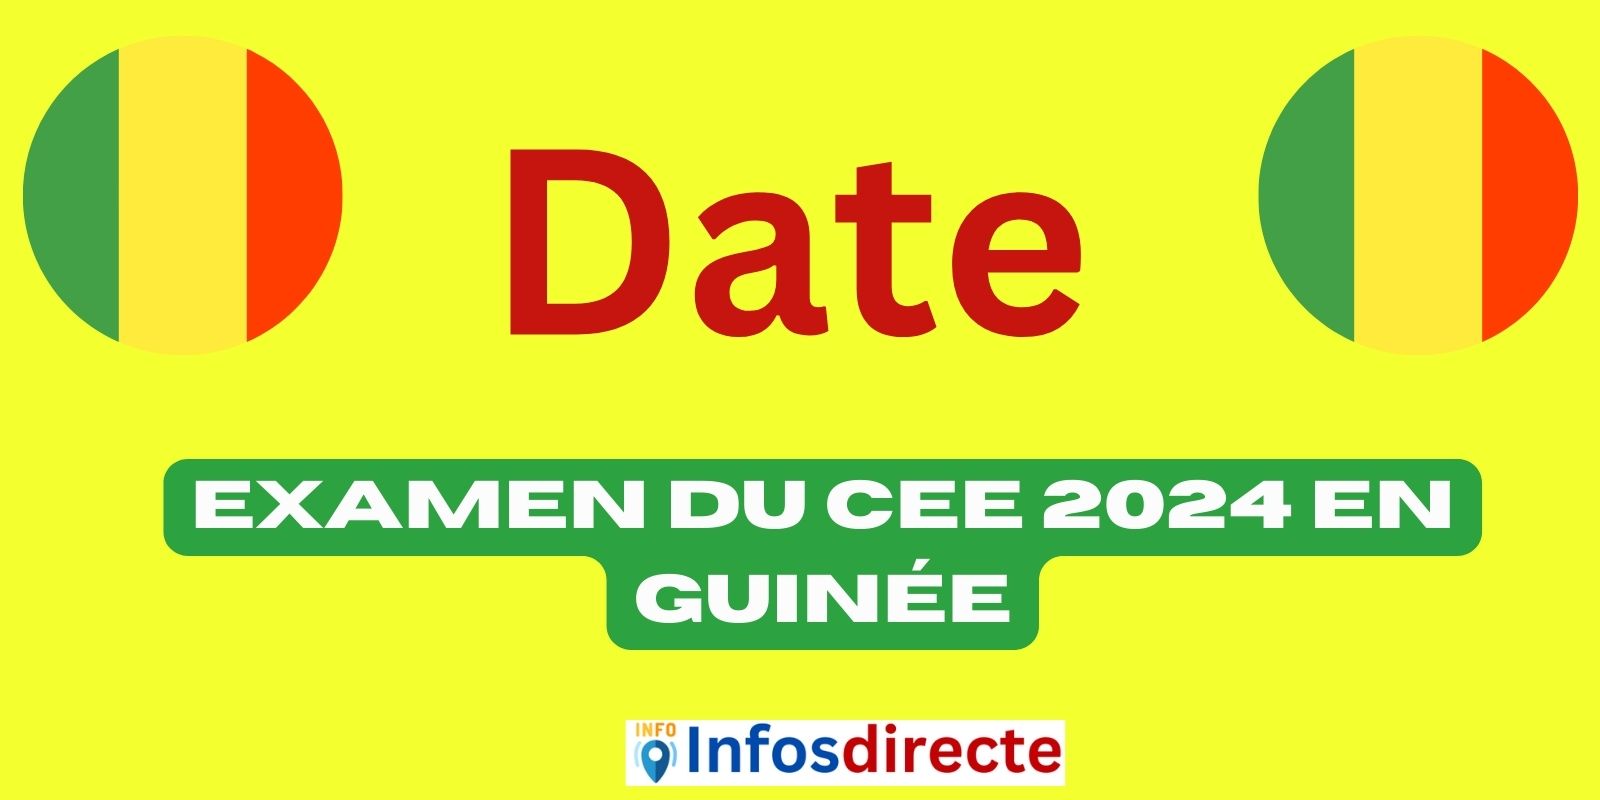 Examen du CEE 2024 en Guinée